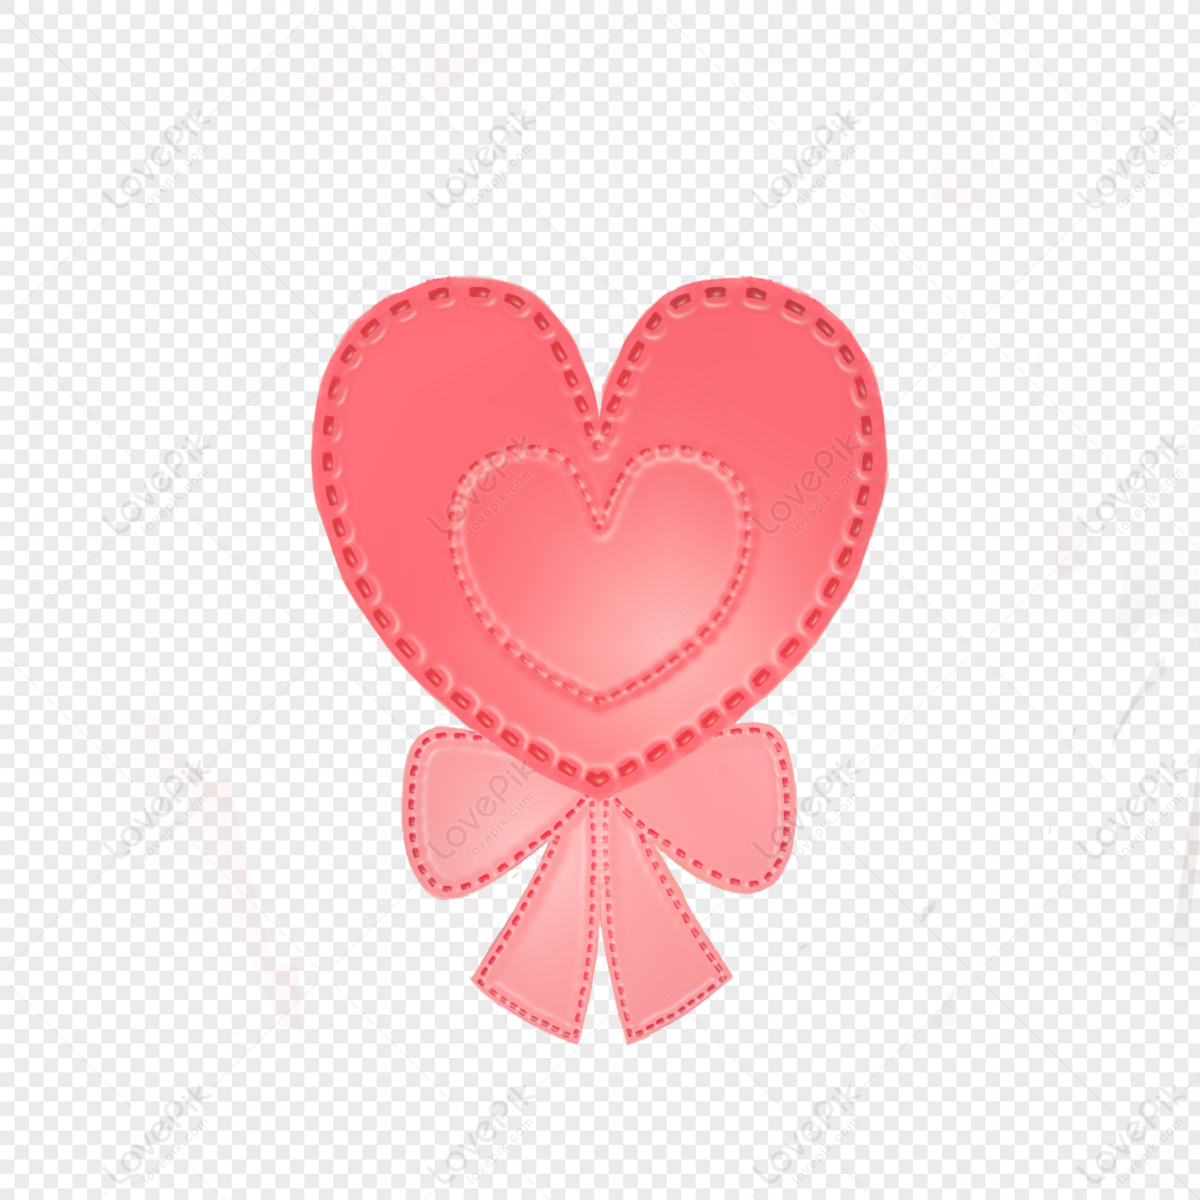 Hình trái tim là một trong những biểu tượng không thể thiếu trong các thiết kế, đặc biệt là những sản phẩm liên quan đến tình yêu. Nếu bạn đang tìm kiếm hình trái tim PNG miễn phí để trang trí sản phẩm của mình, đây chính là bức ảnh bạn cần tìm.